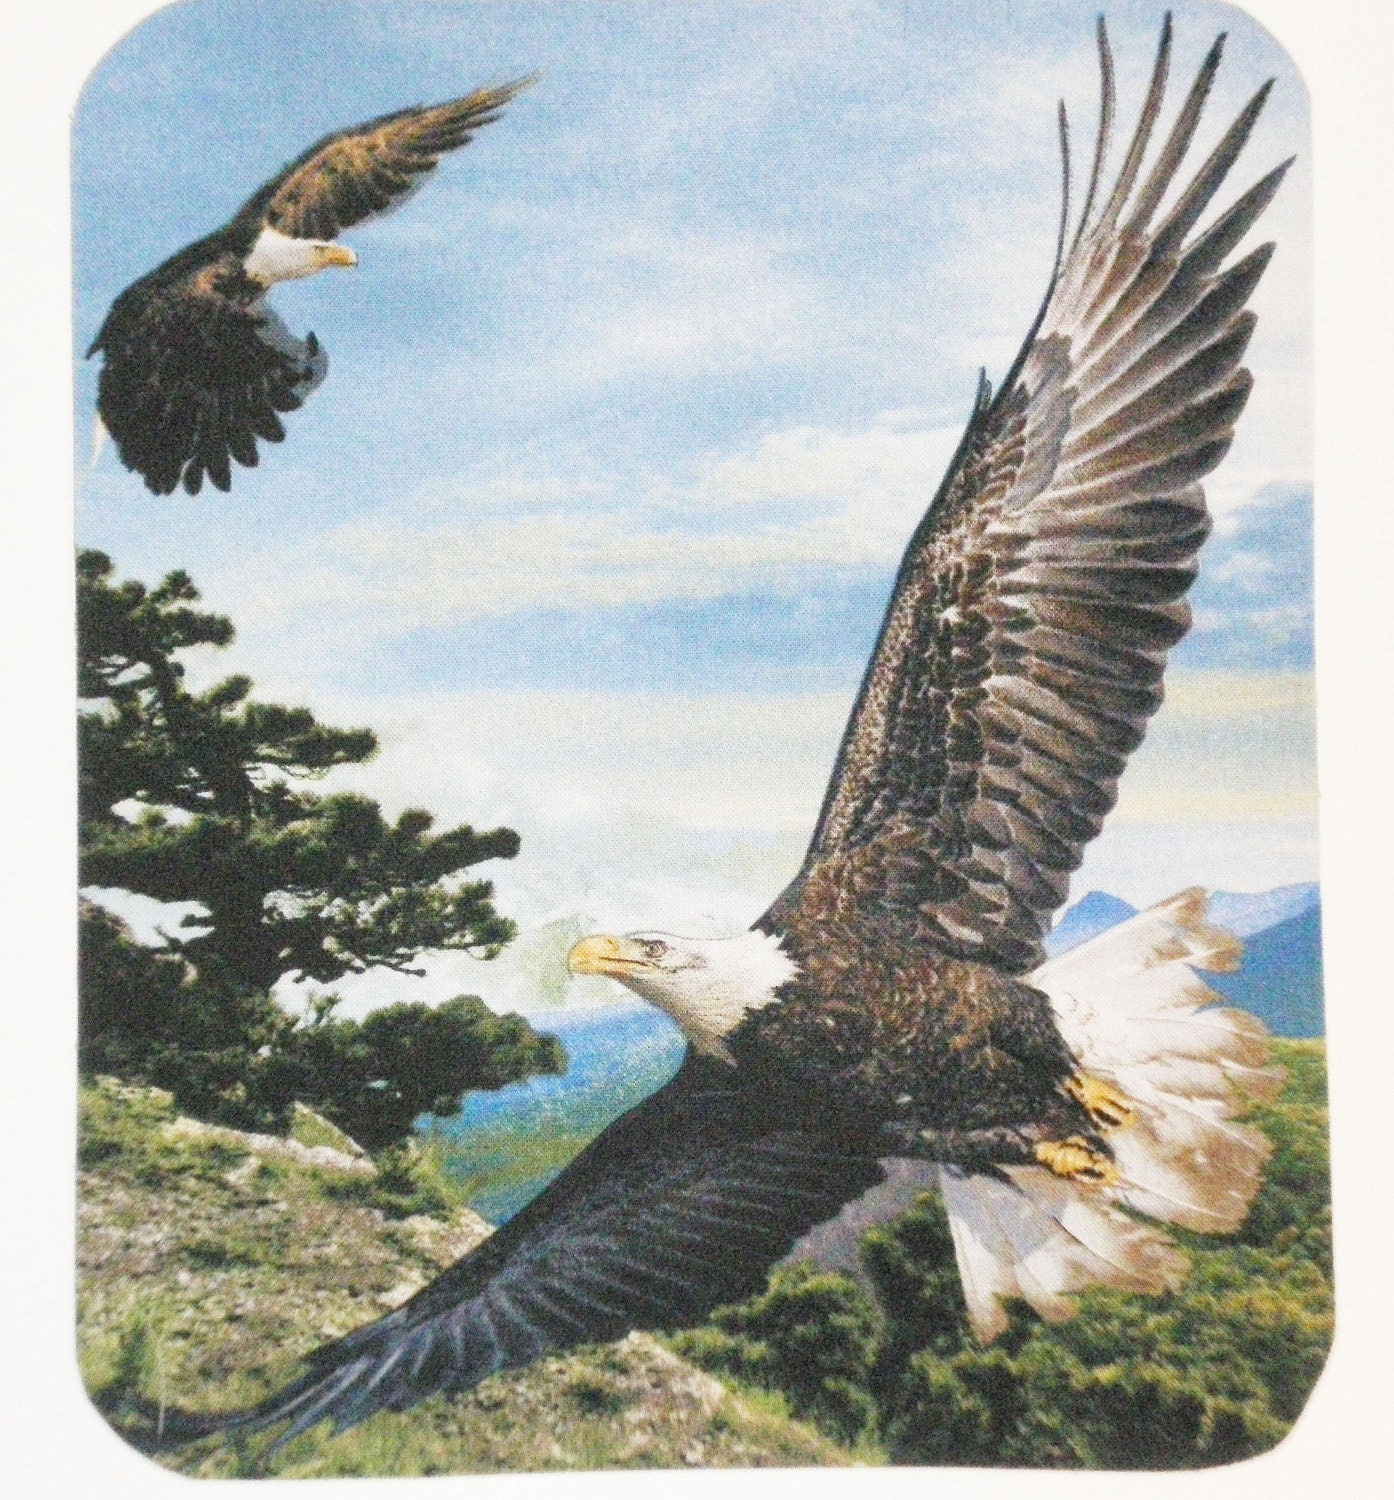 Soaring Eagle